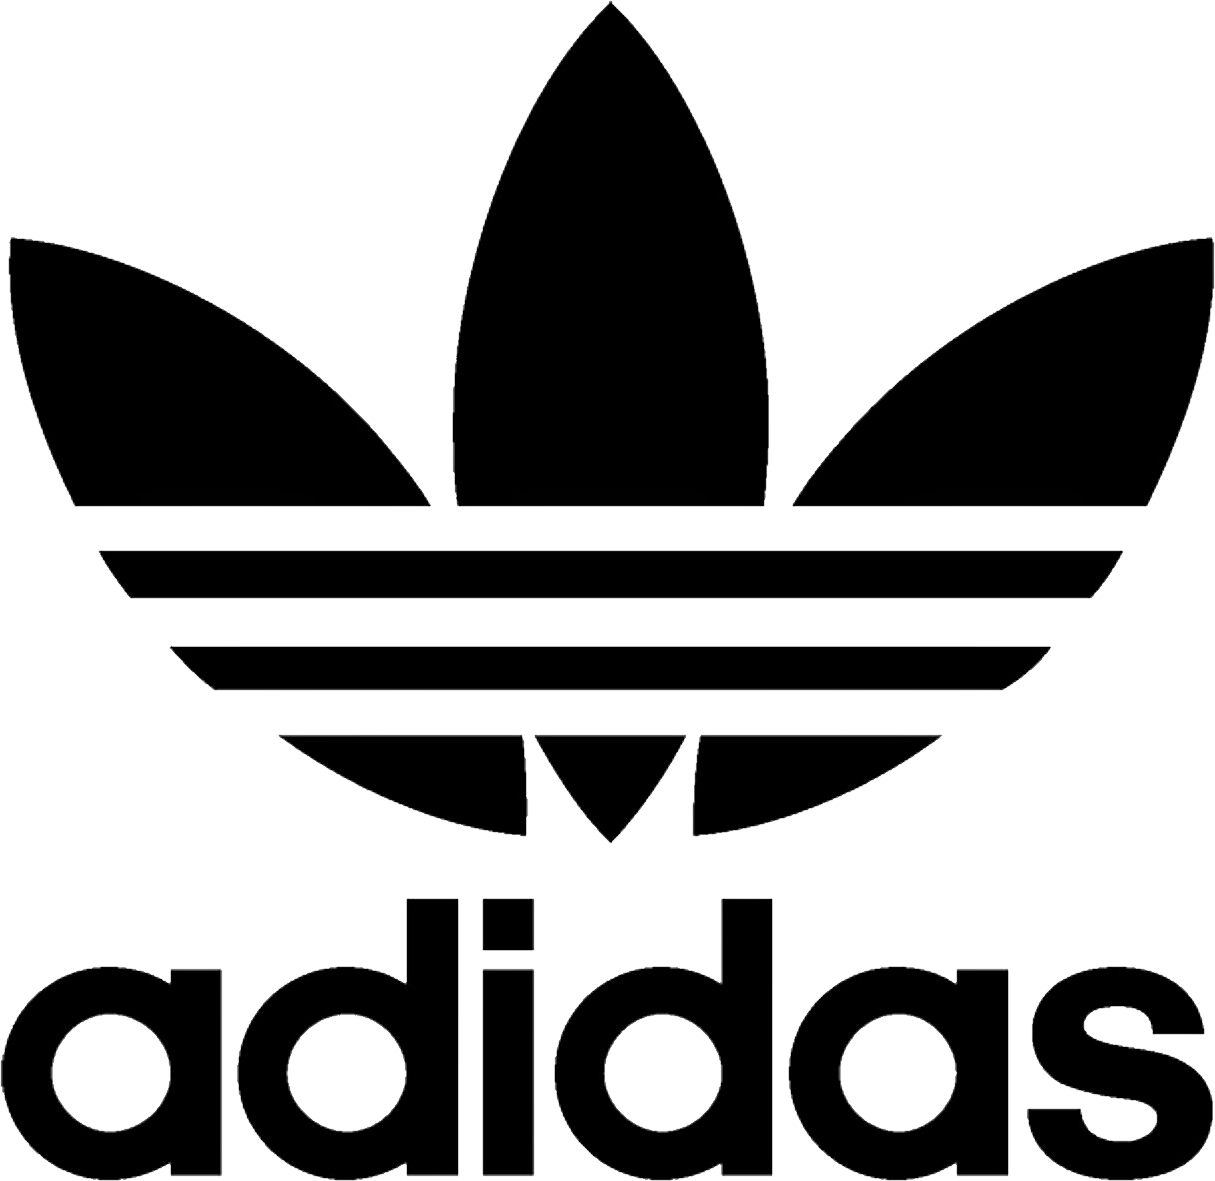 Whiteadidas Logo - Adidas logo PNG image free download